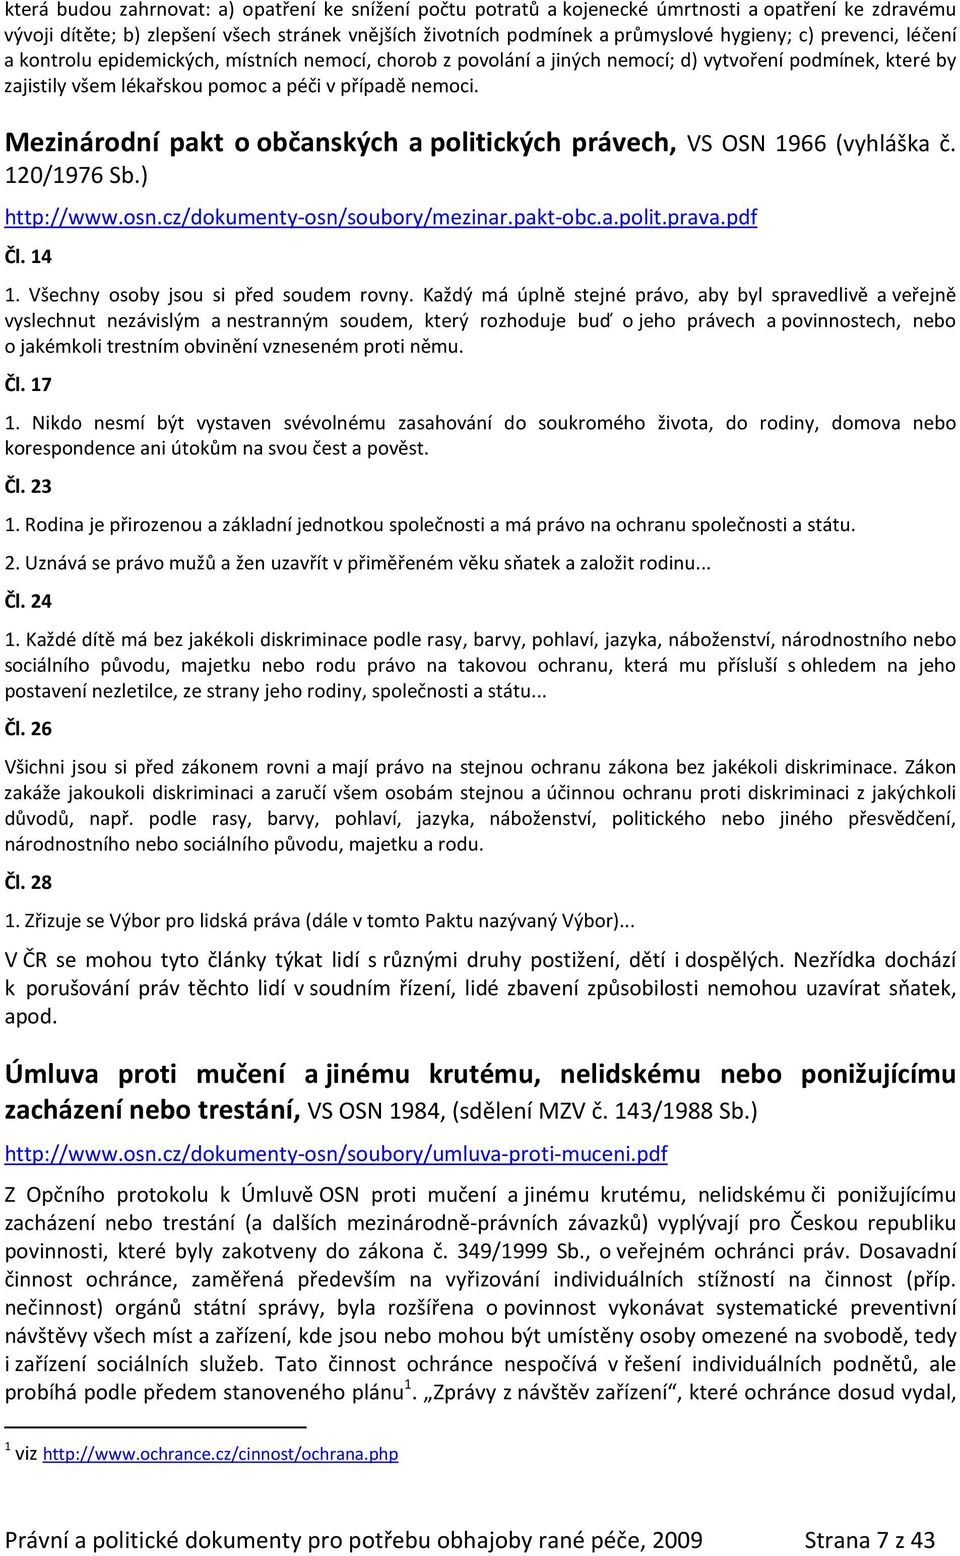 Mezinárodní pakt o občanských a politických právech, VS OSN 1966 (vyhláška č. 120/1976 Sb.) http://www.osn.cz/dokumenty-osn/soubory/mezinar.pakt-obc.a.polit.prava.pdf Čl. 14 1.